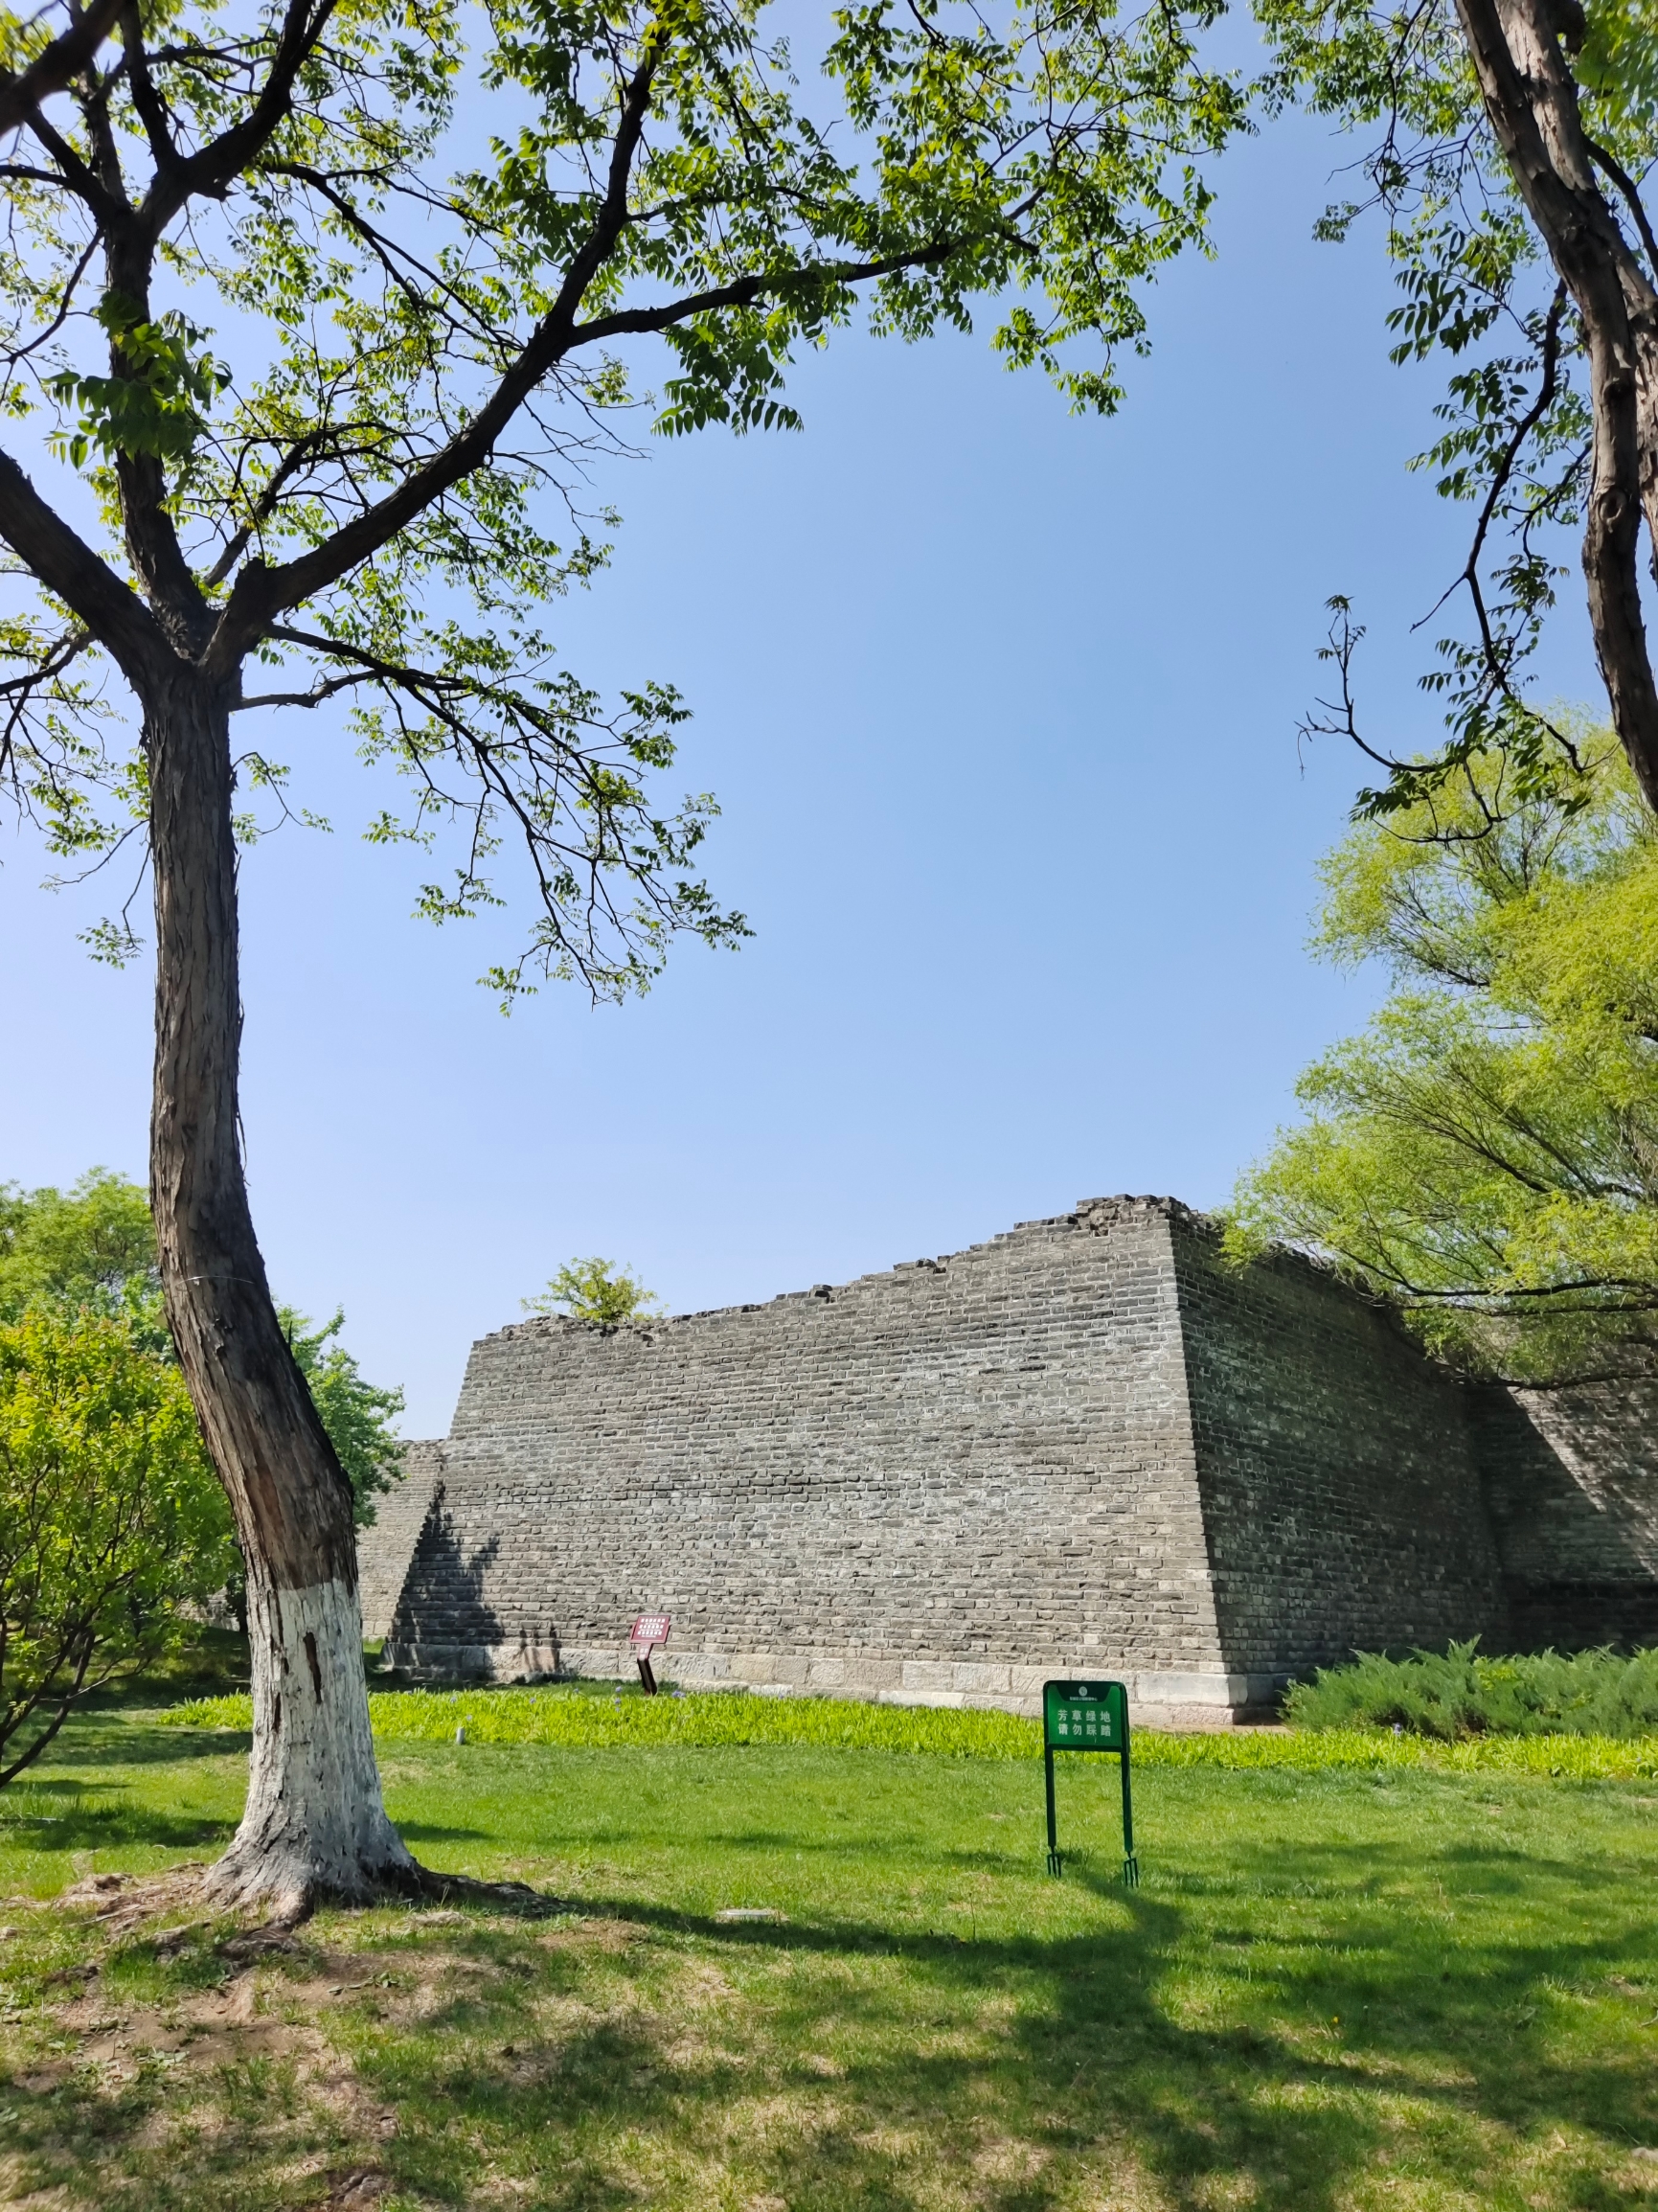 明城墙遗存，包括东便门段、西便门段和左安门值房三部分。 明代北京城是在元大都的基础上改造而成。上世纪